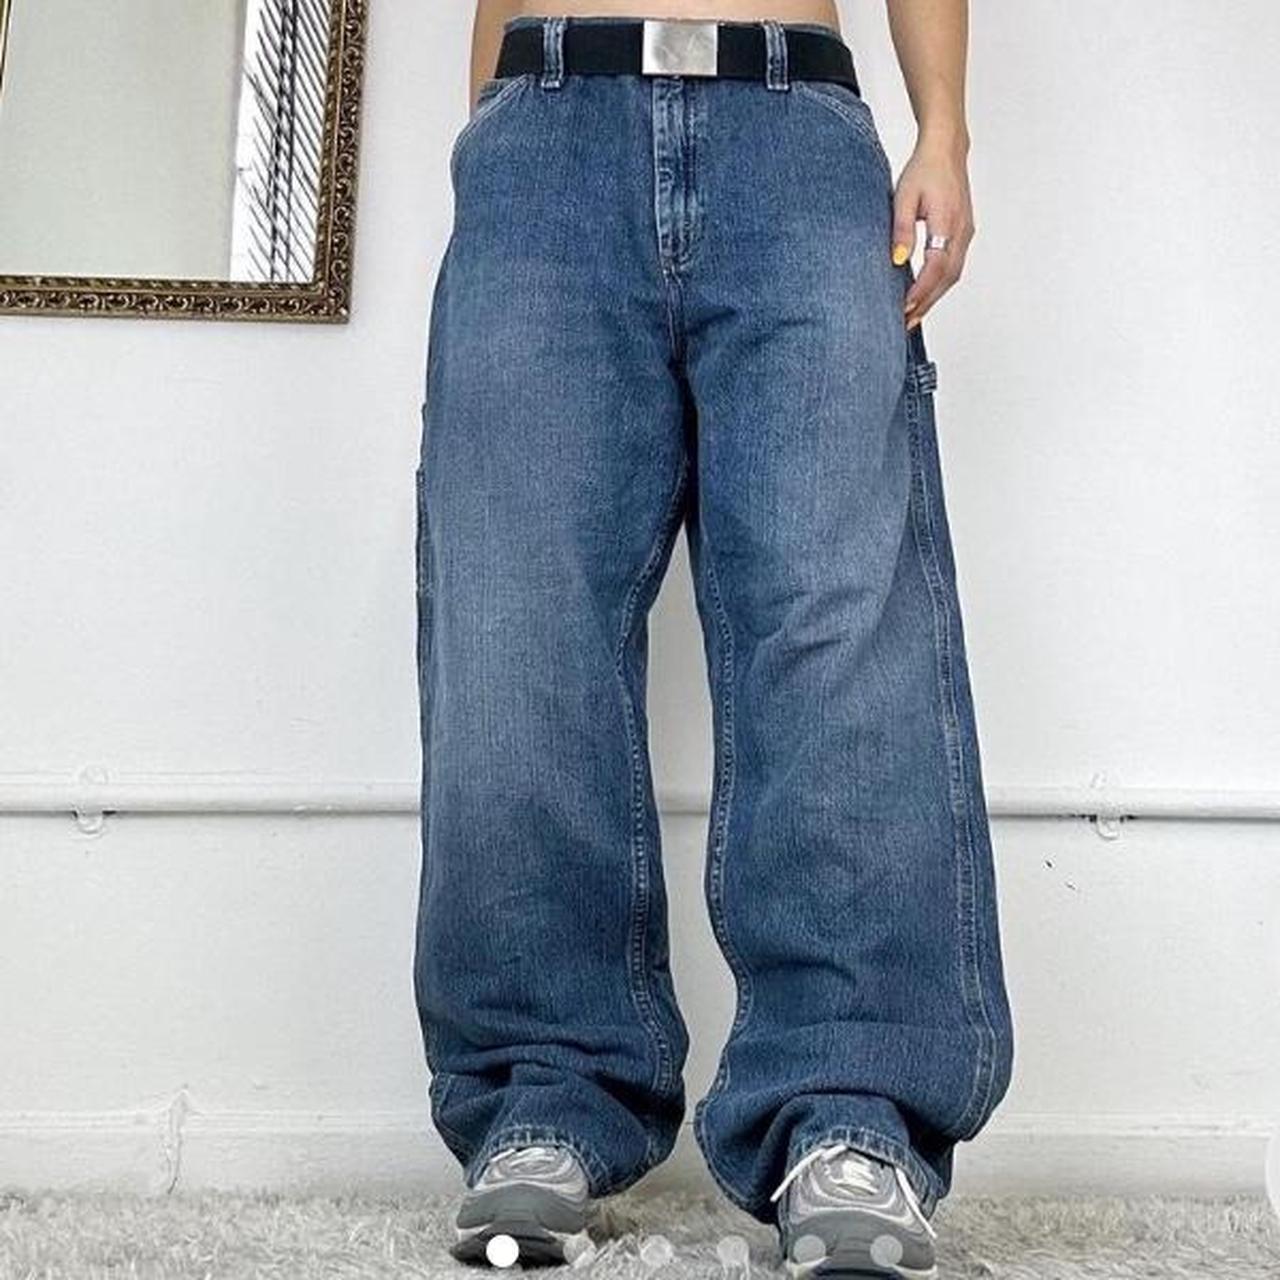 Wide leg cargo jeans by Lee Waist 36 Inside leg... - Depop